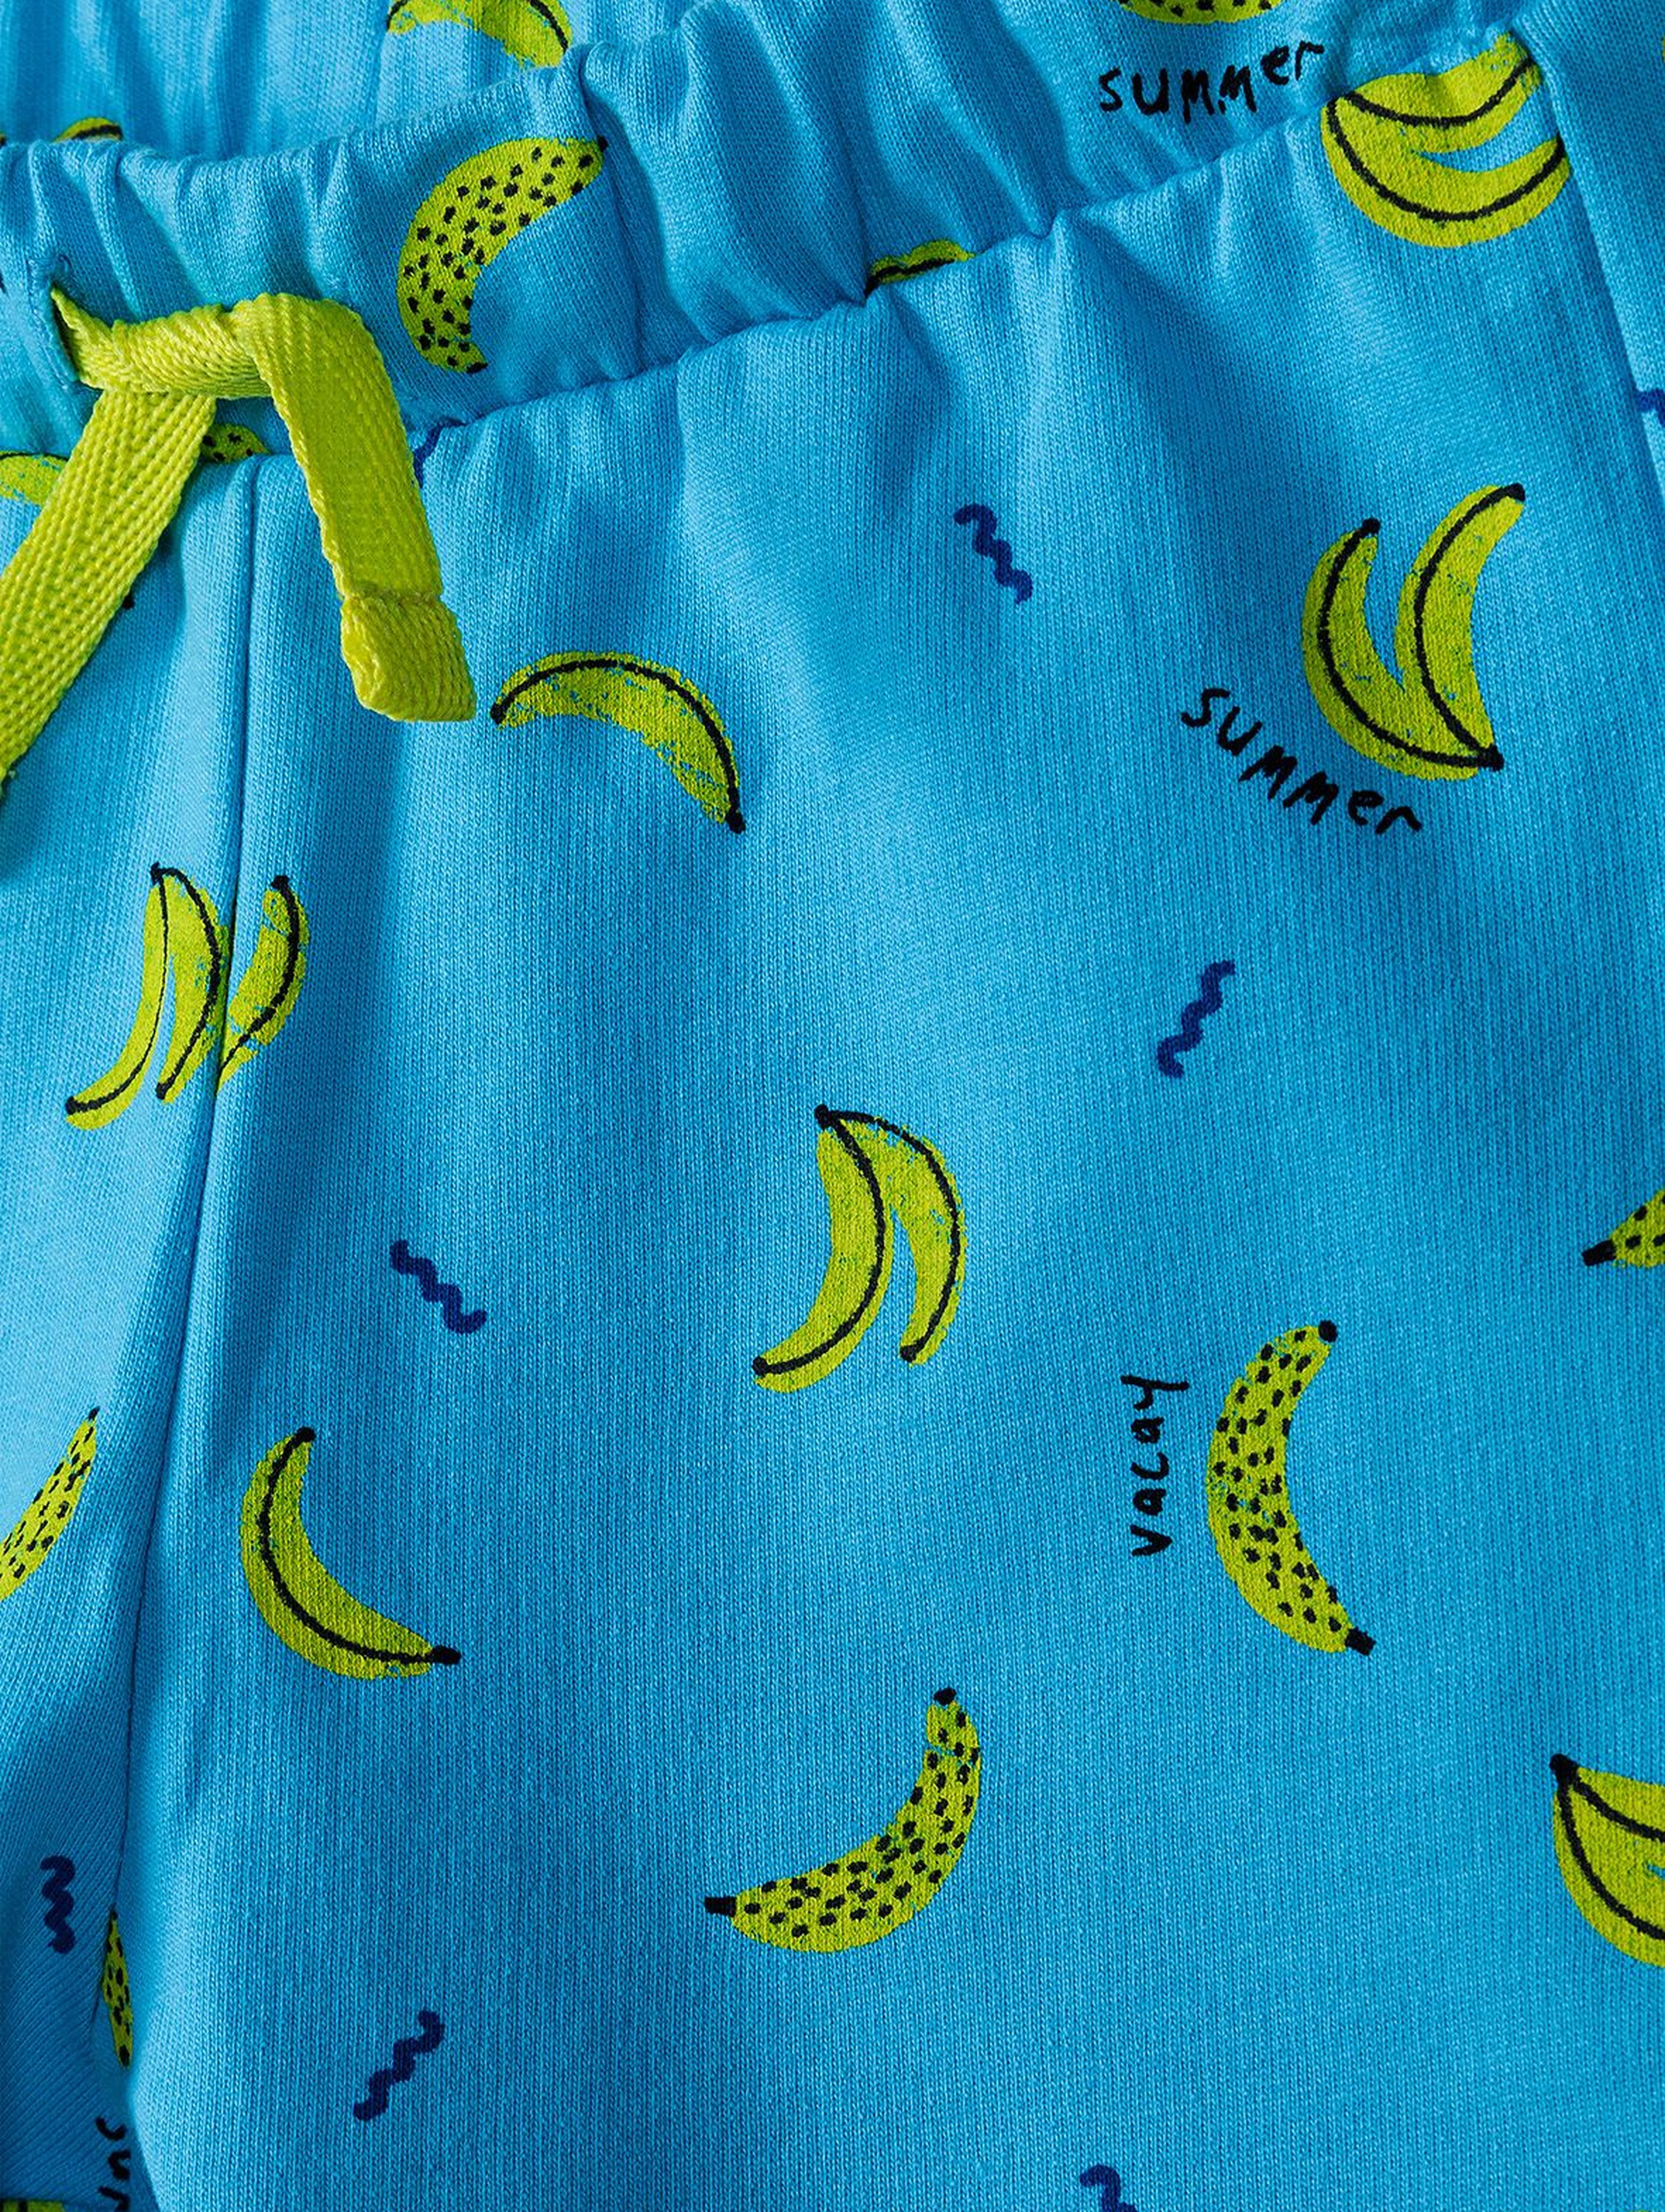 Dzianinowe szorty w banany dla niemowlaka - niebieskie w banany